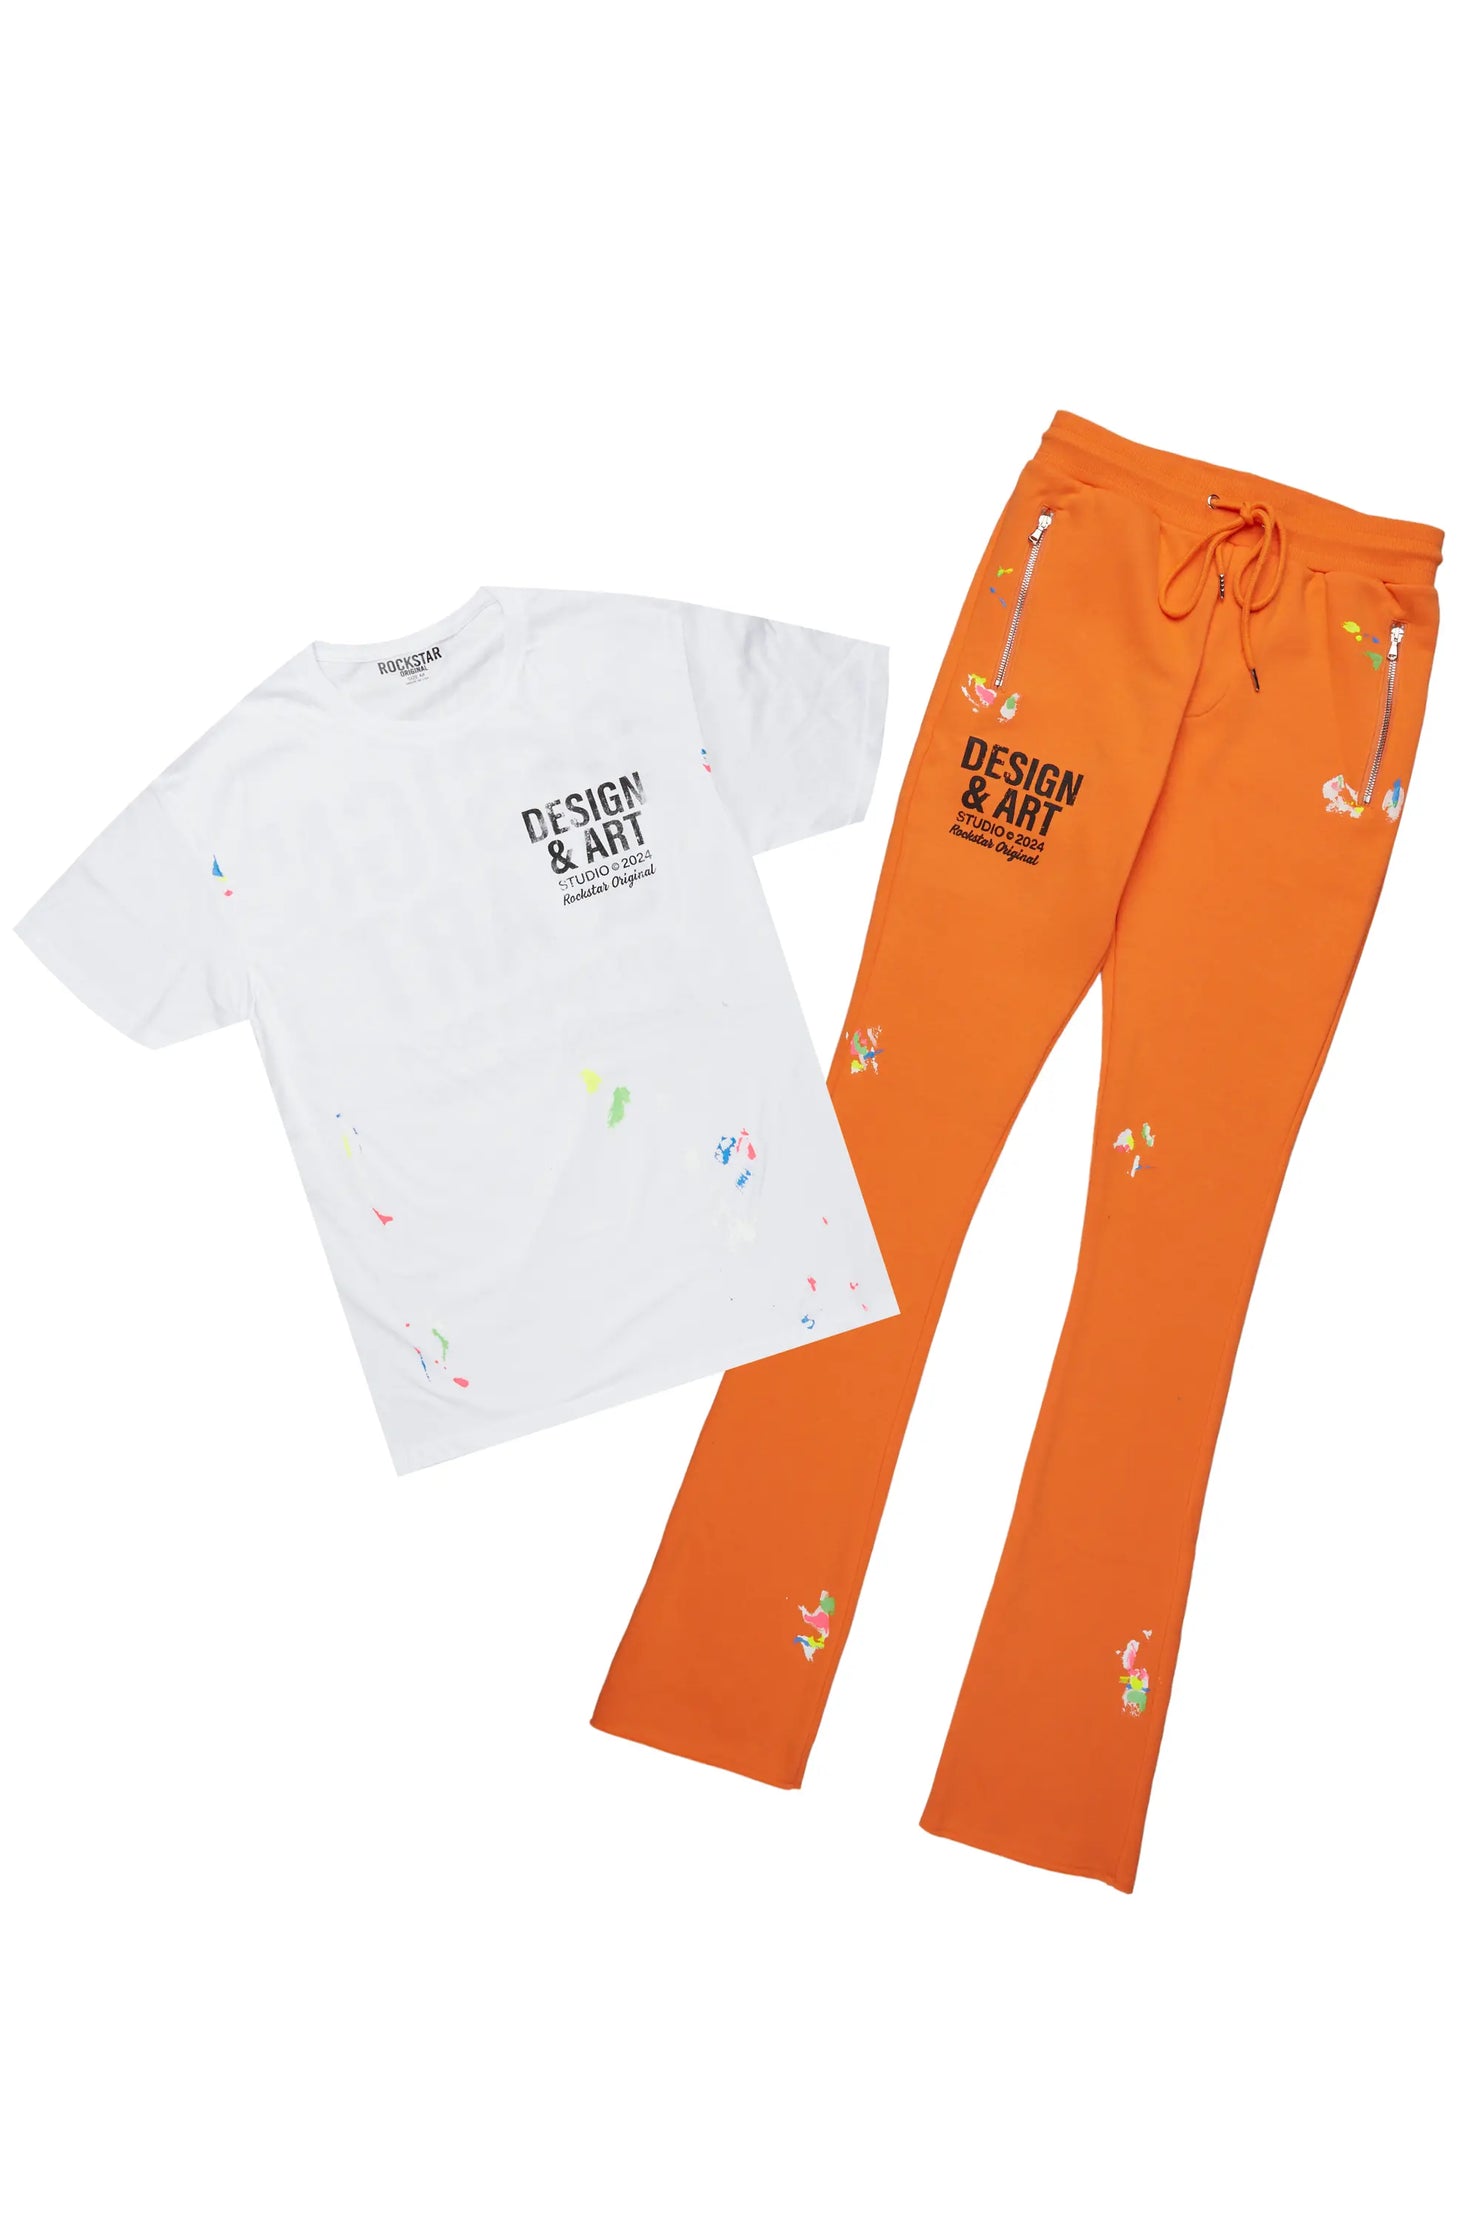 Mancha Orange T-Shirt Stacked Flare Track Set